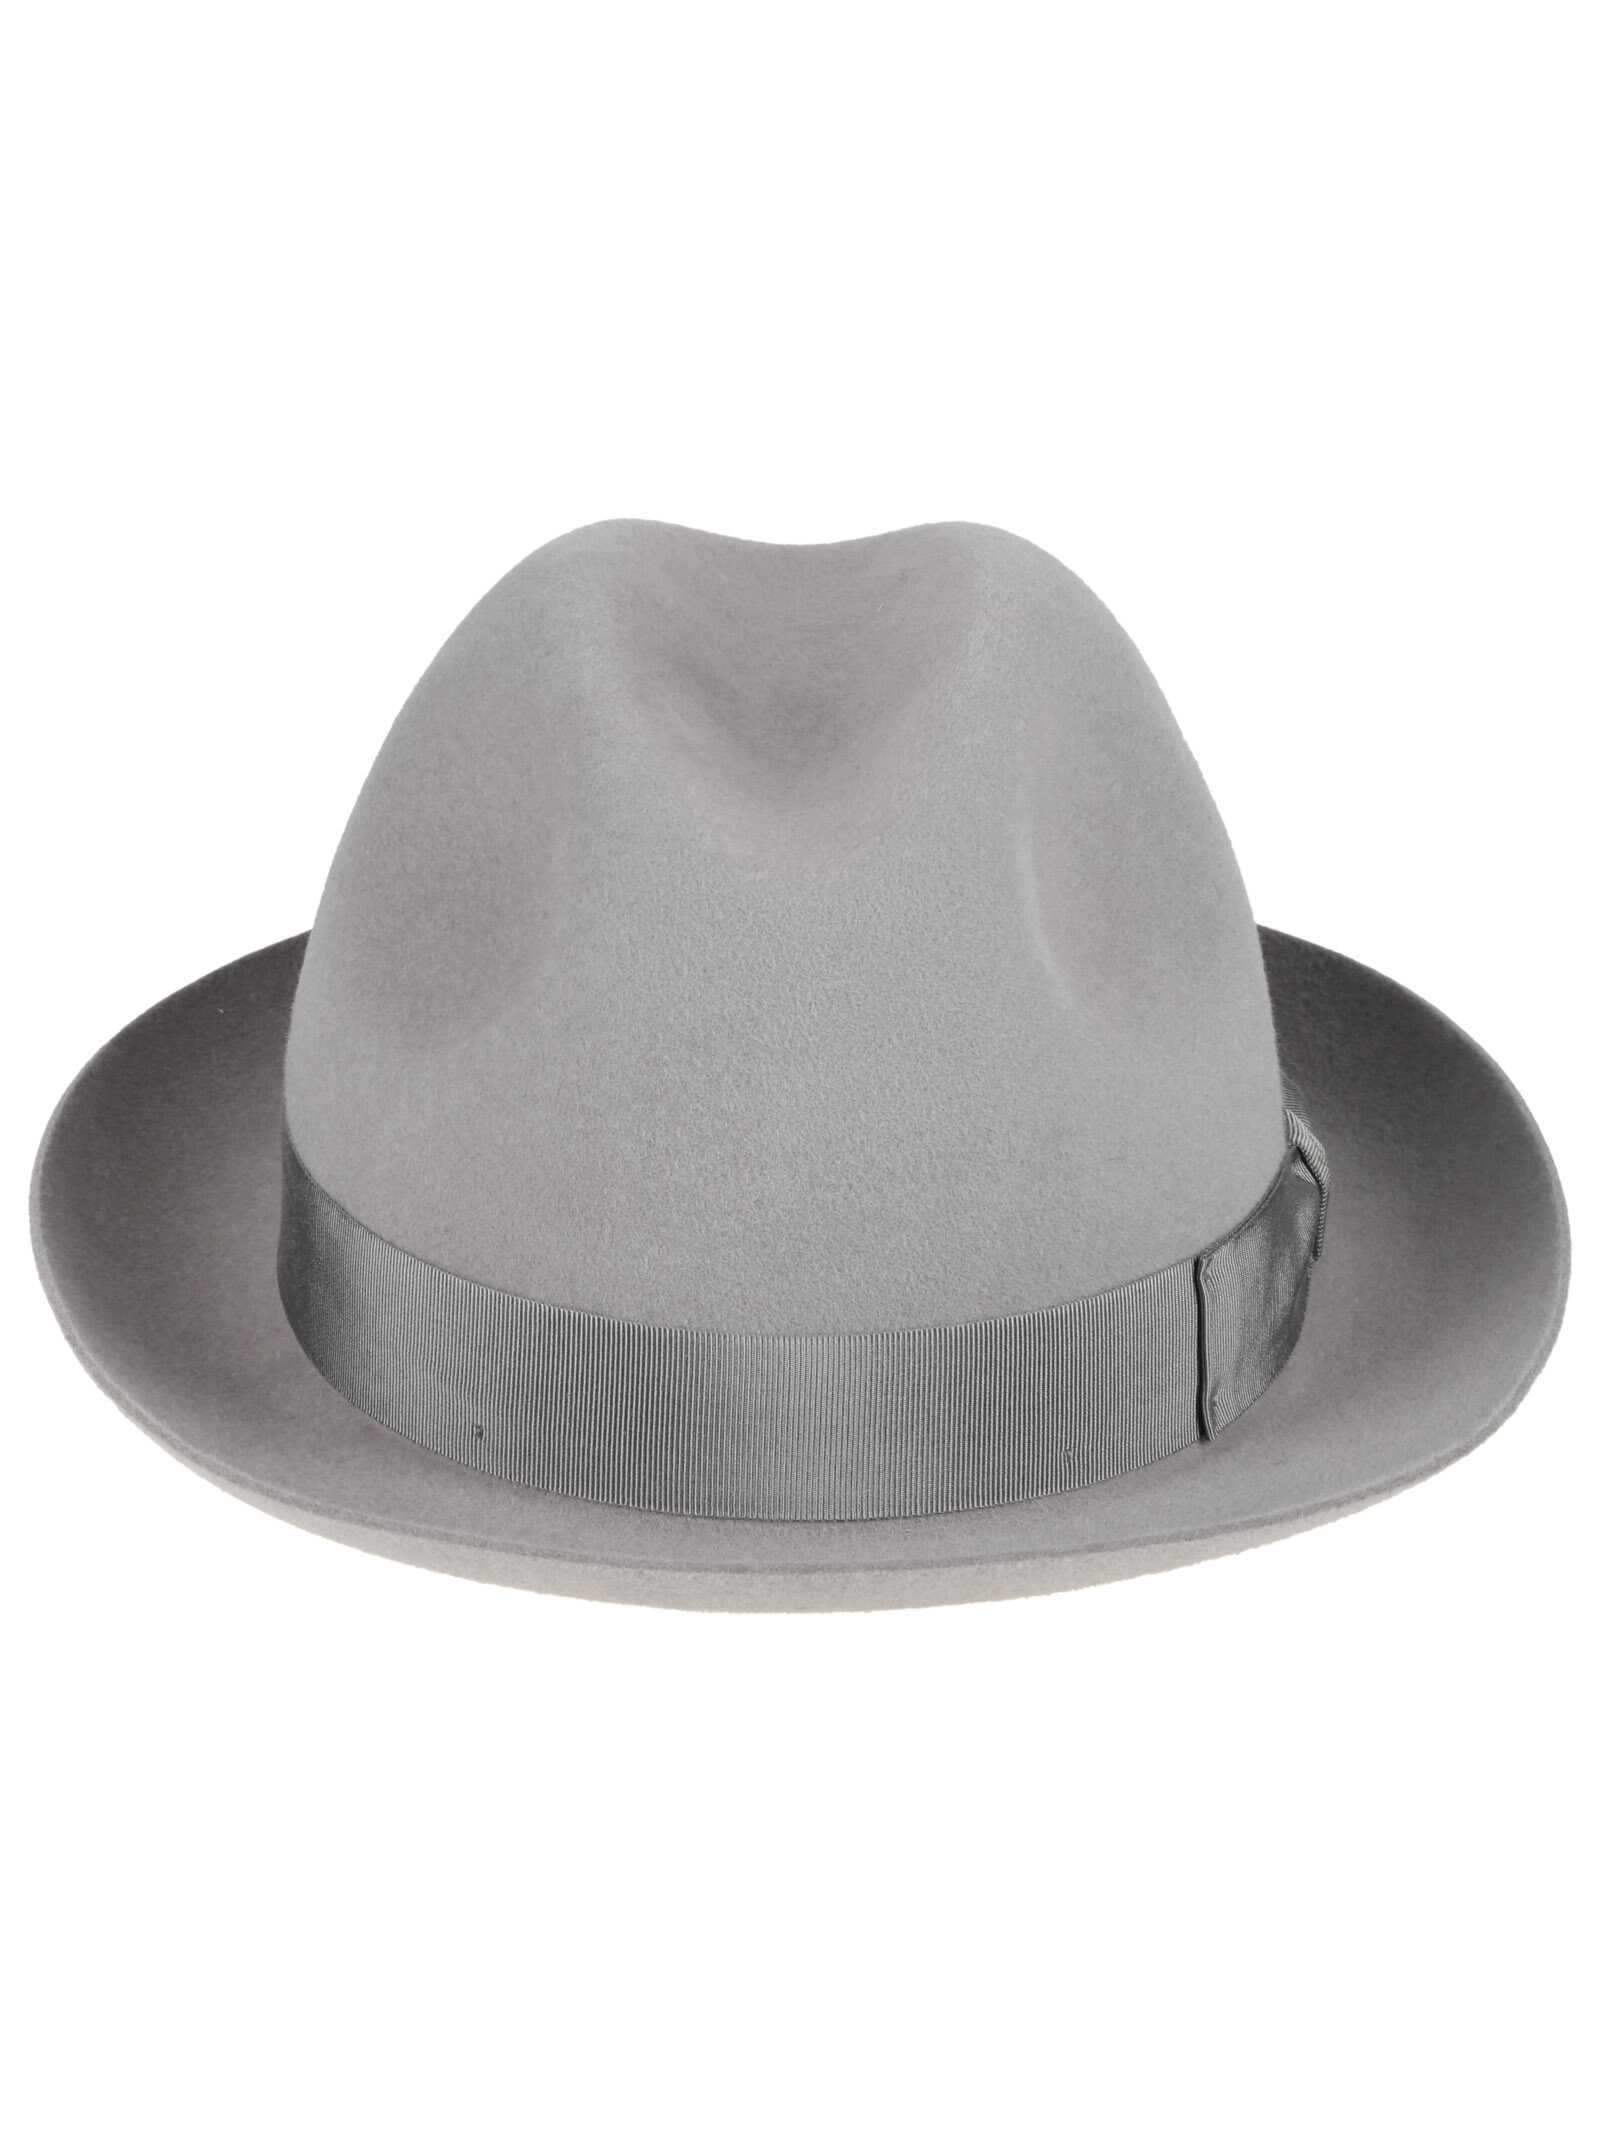 BORSALINO BORSALINO hat 490029 1311 GREY Grey